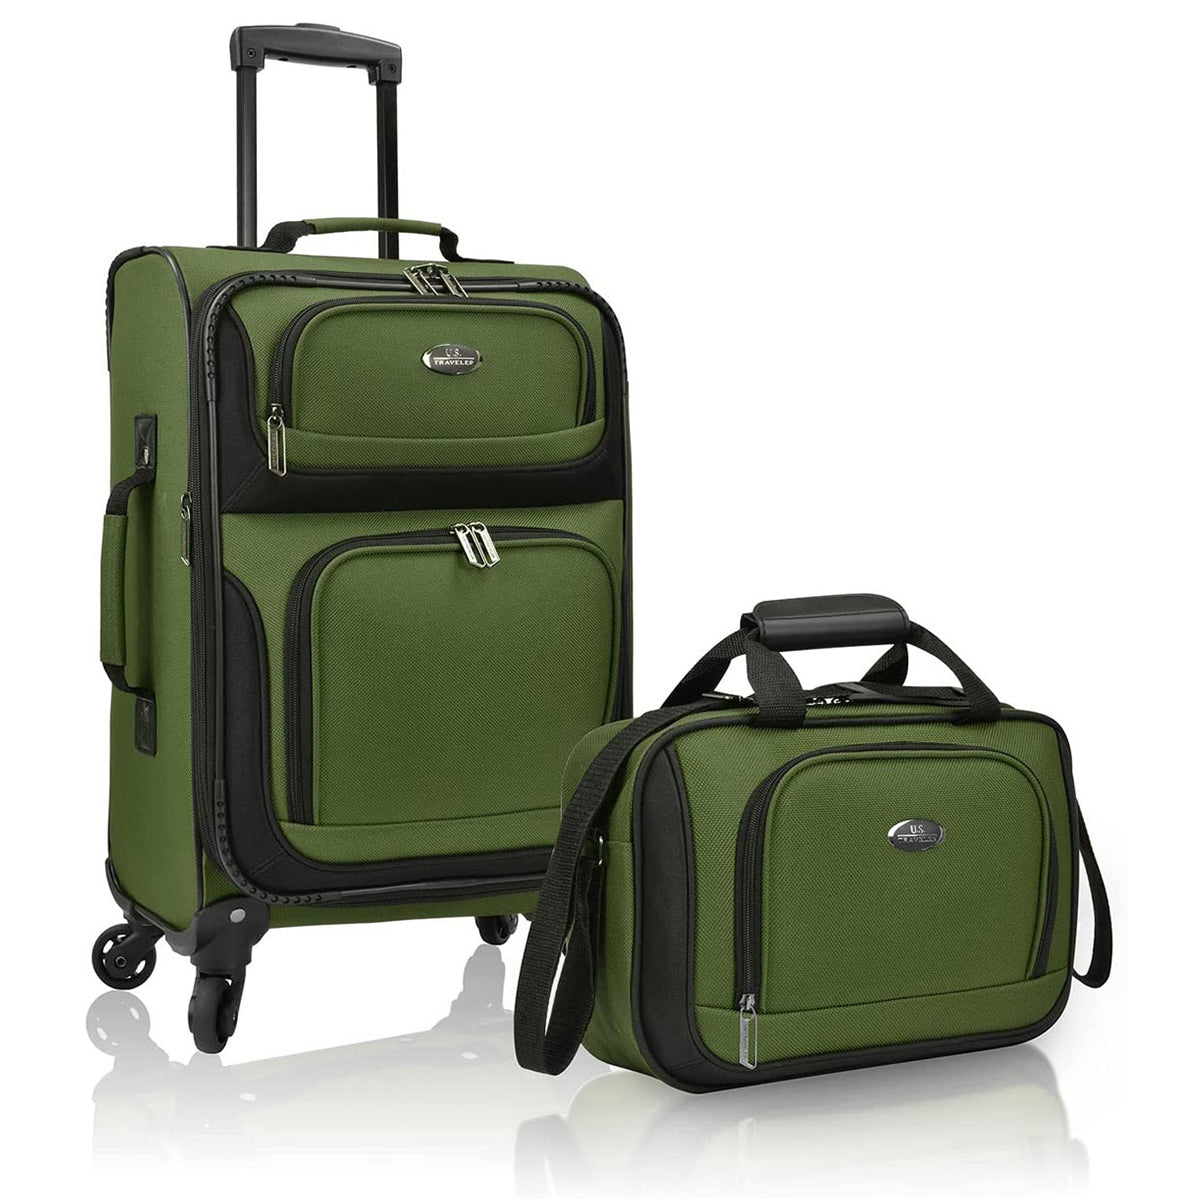   U.S. Traveler Rugged Fabric Expandable Carry-on Luggage Set, 4 Wheel 